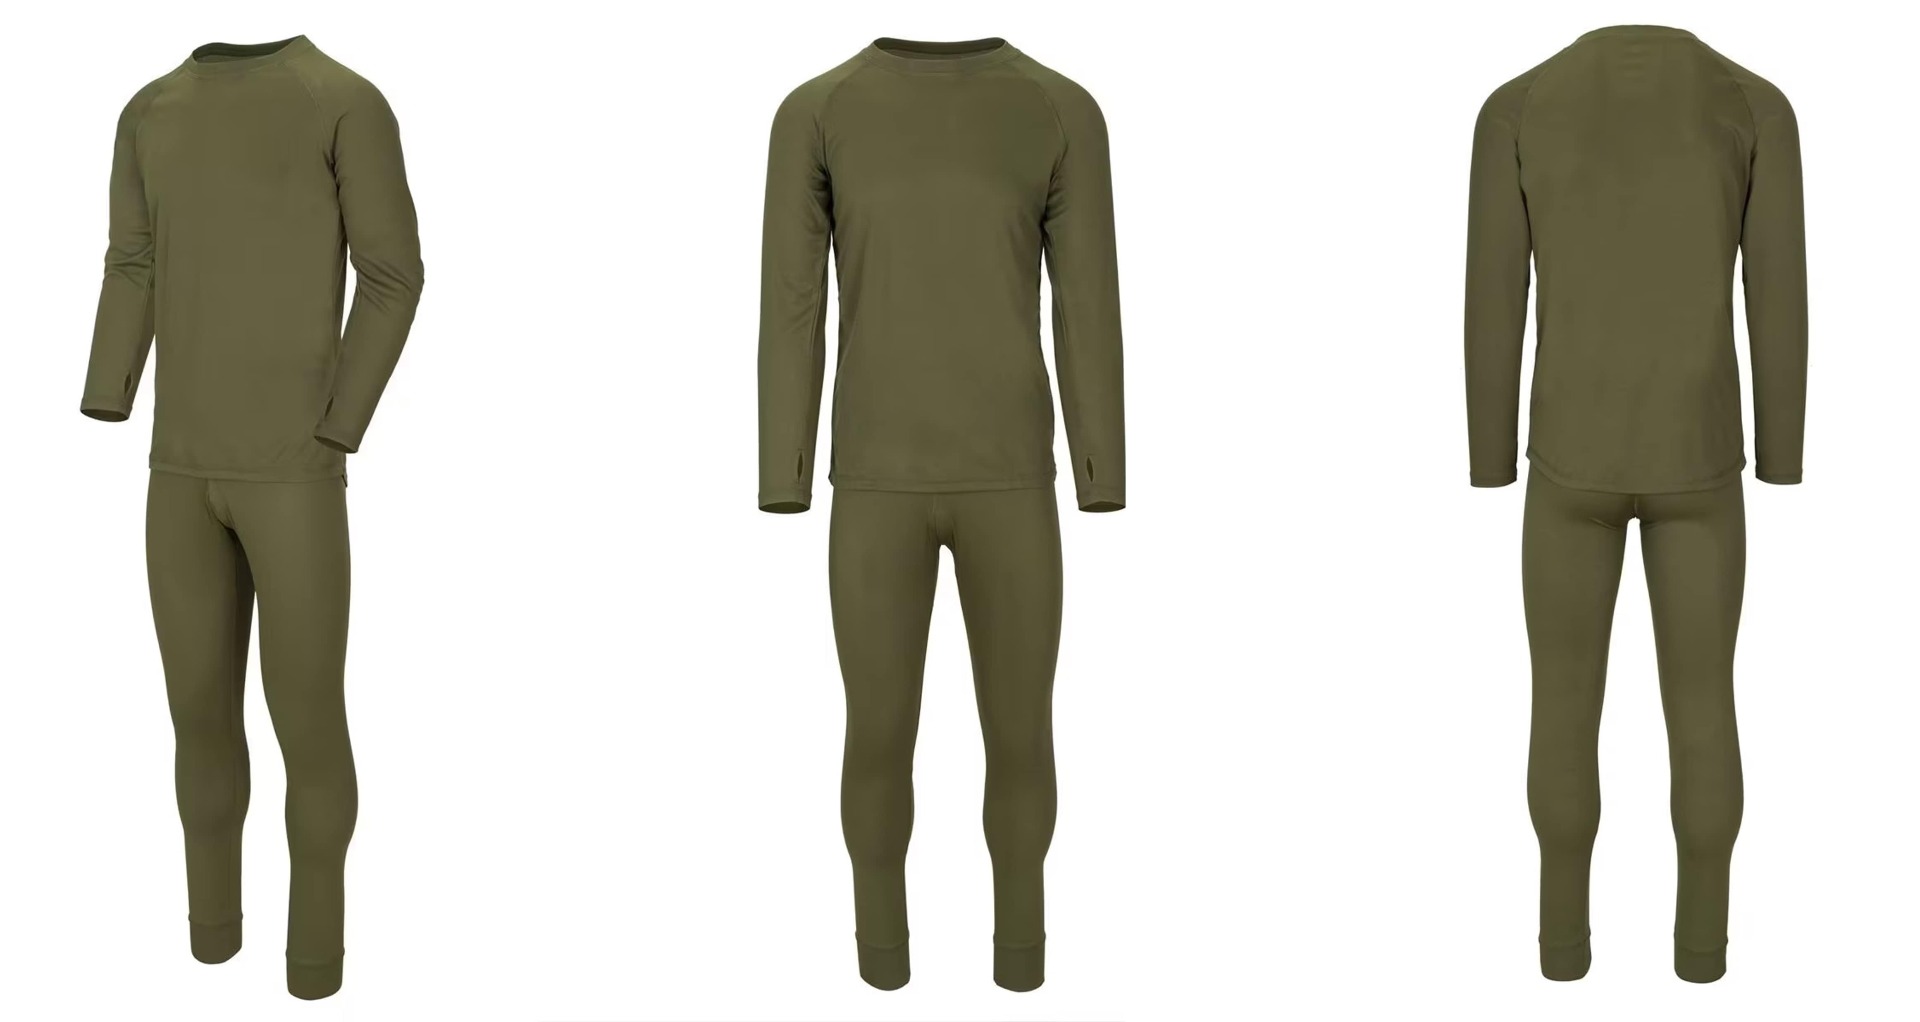 Kupite Helikon US LVL 1 Olive Green termo perilo set za vojaška in taktična oblačila. Vrhunsko termoaktivno spodnje perilo za udobno in učinkovito nošenje.